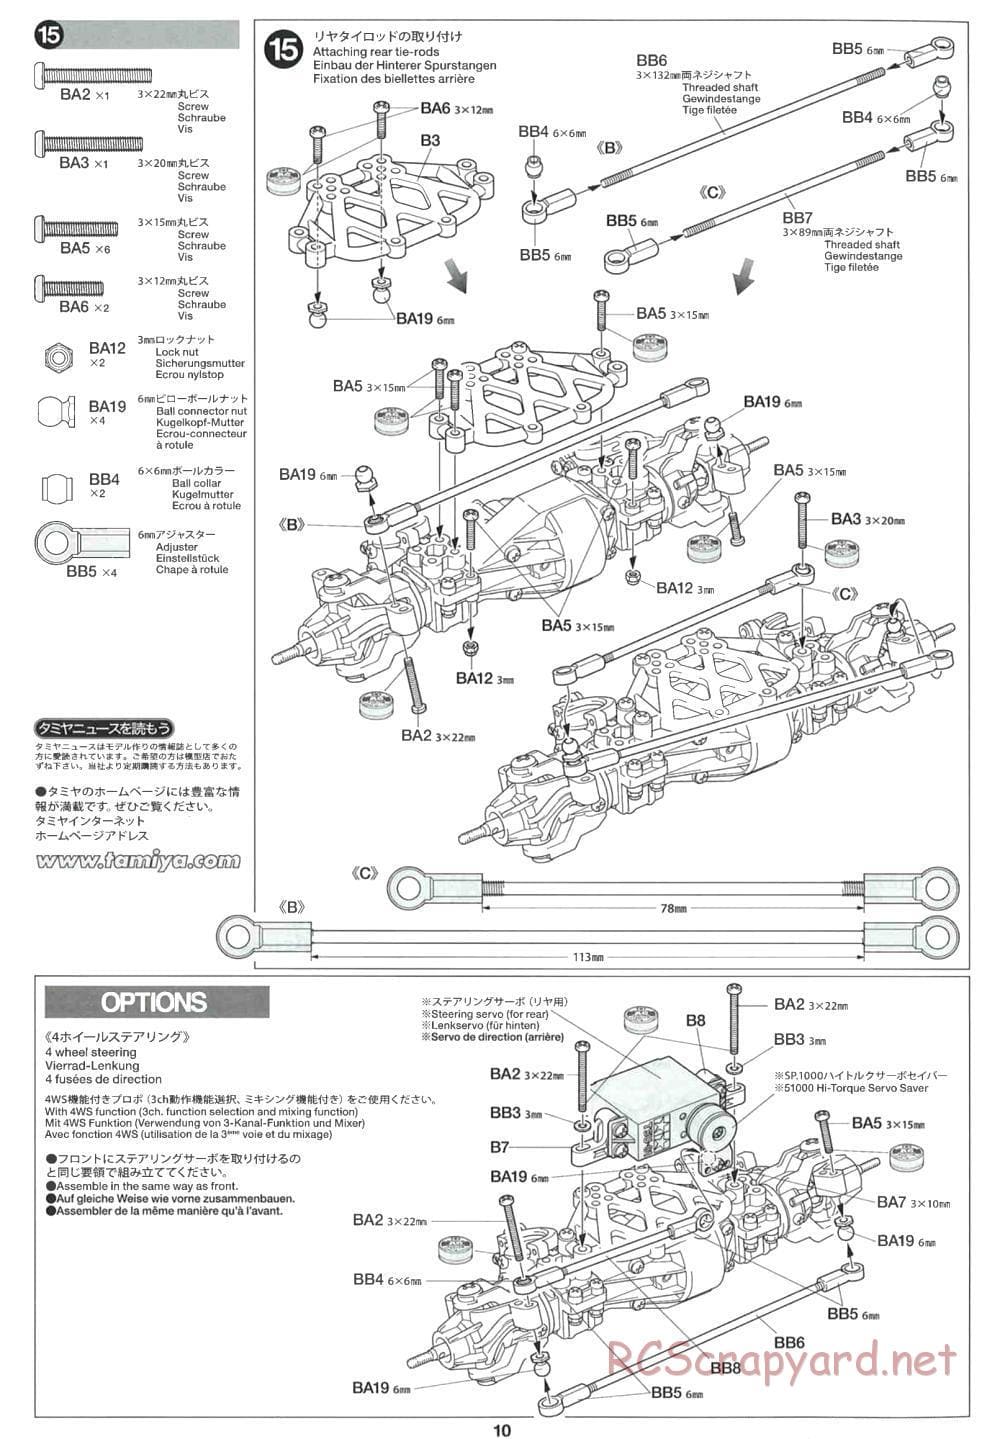 Tamiya - CR-01 Chassis - Manual - Page 10